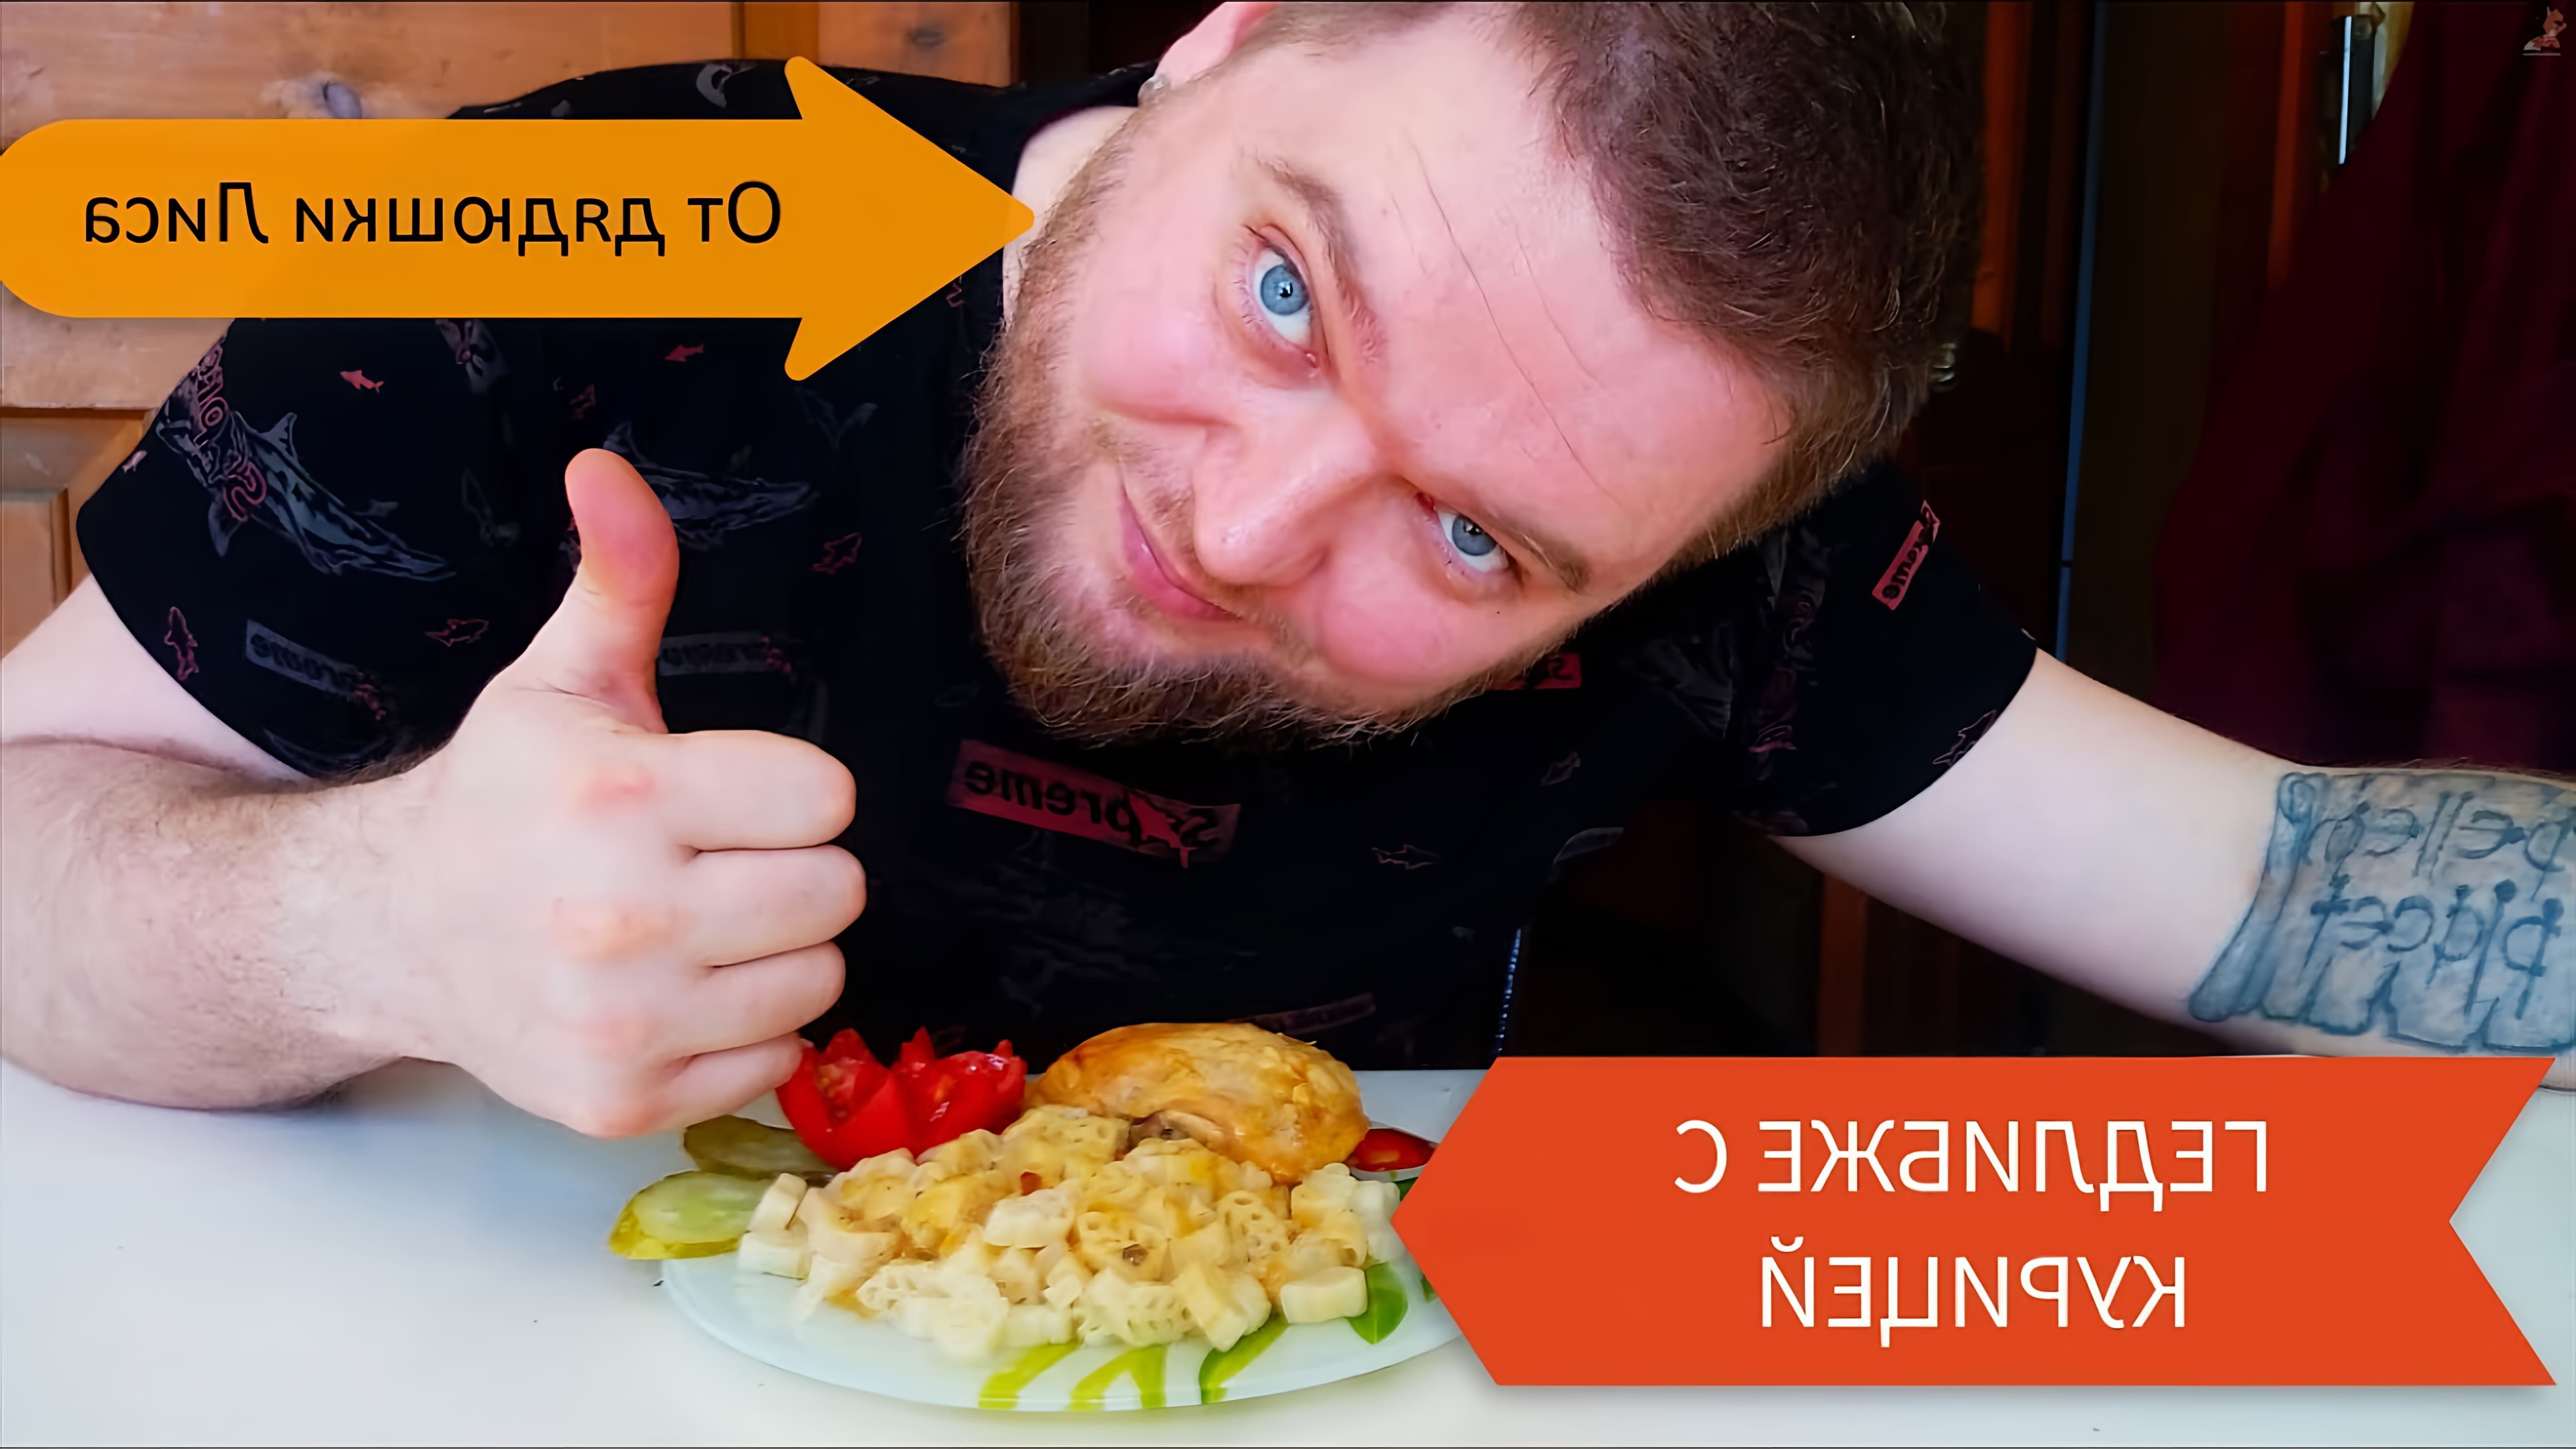 В этом видео демонстрируется процесс приготовления традиционного блюда черкесской кухни - Гедлибже с курицей